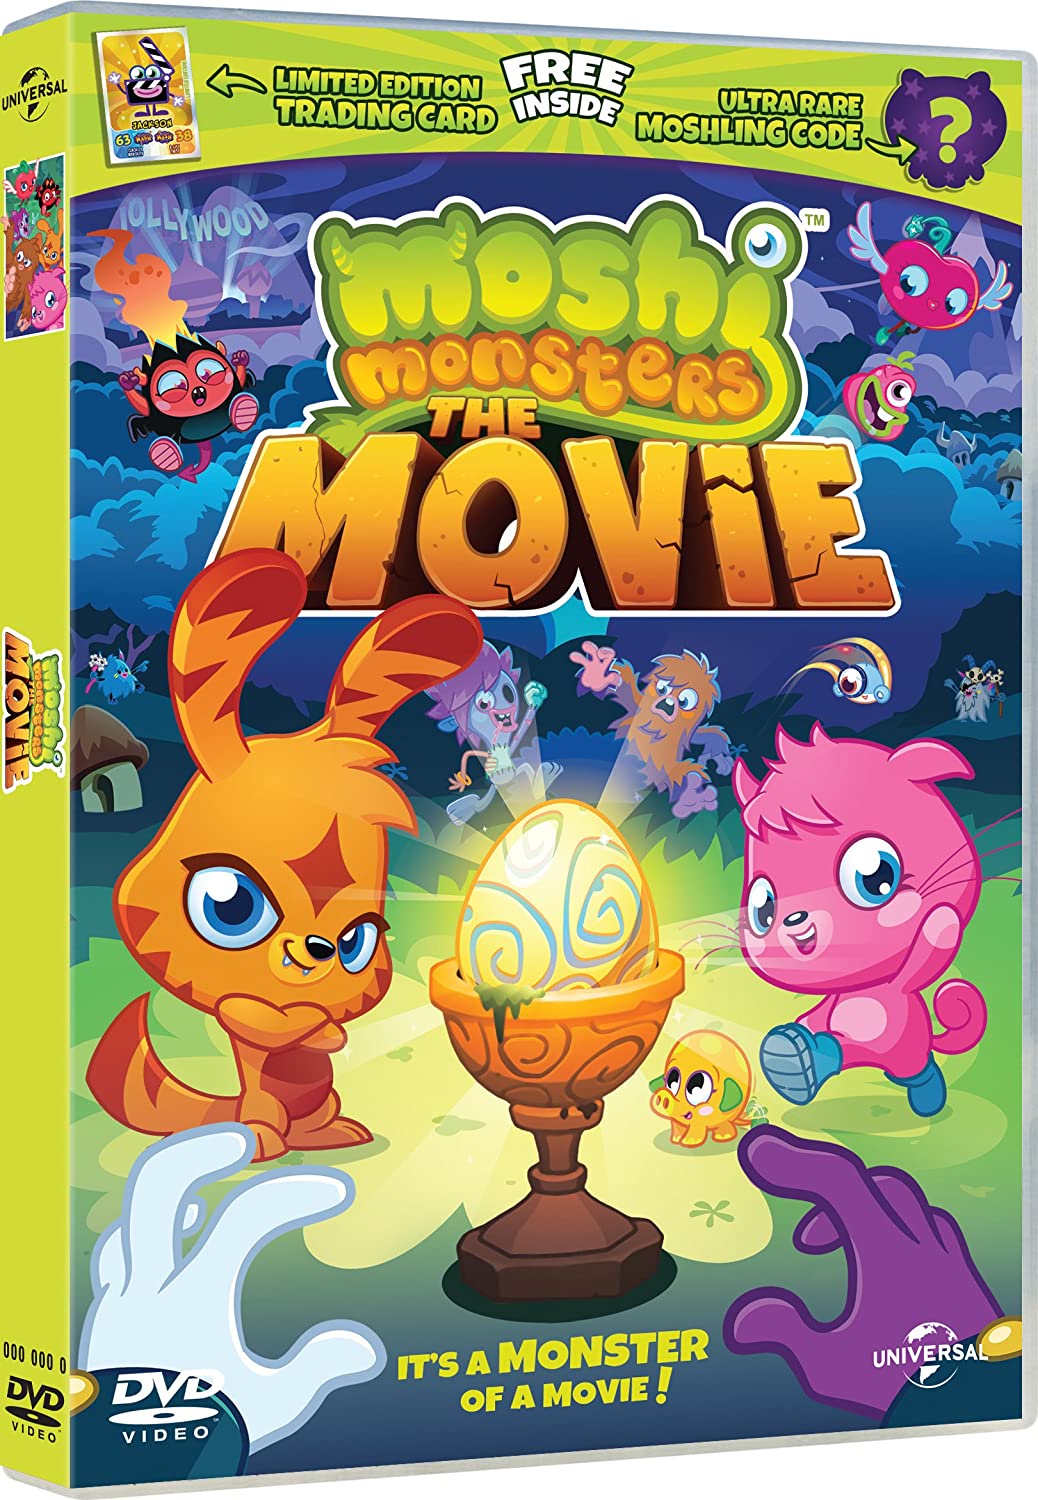 Moshi Monsters mit Sammelkarte und Moshling-Code [2013] [DVD]